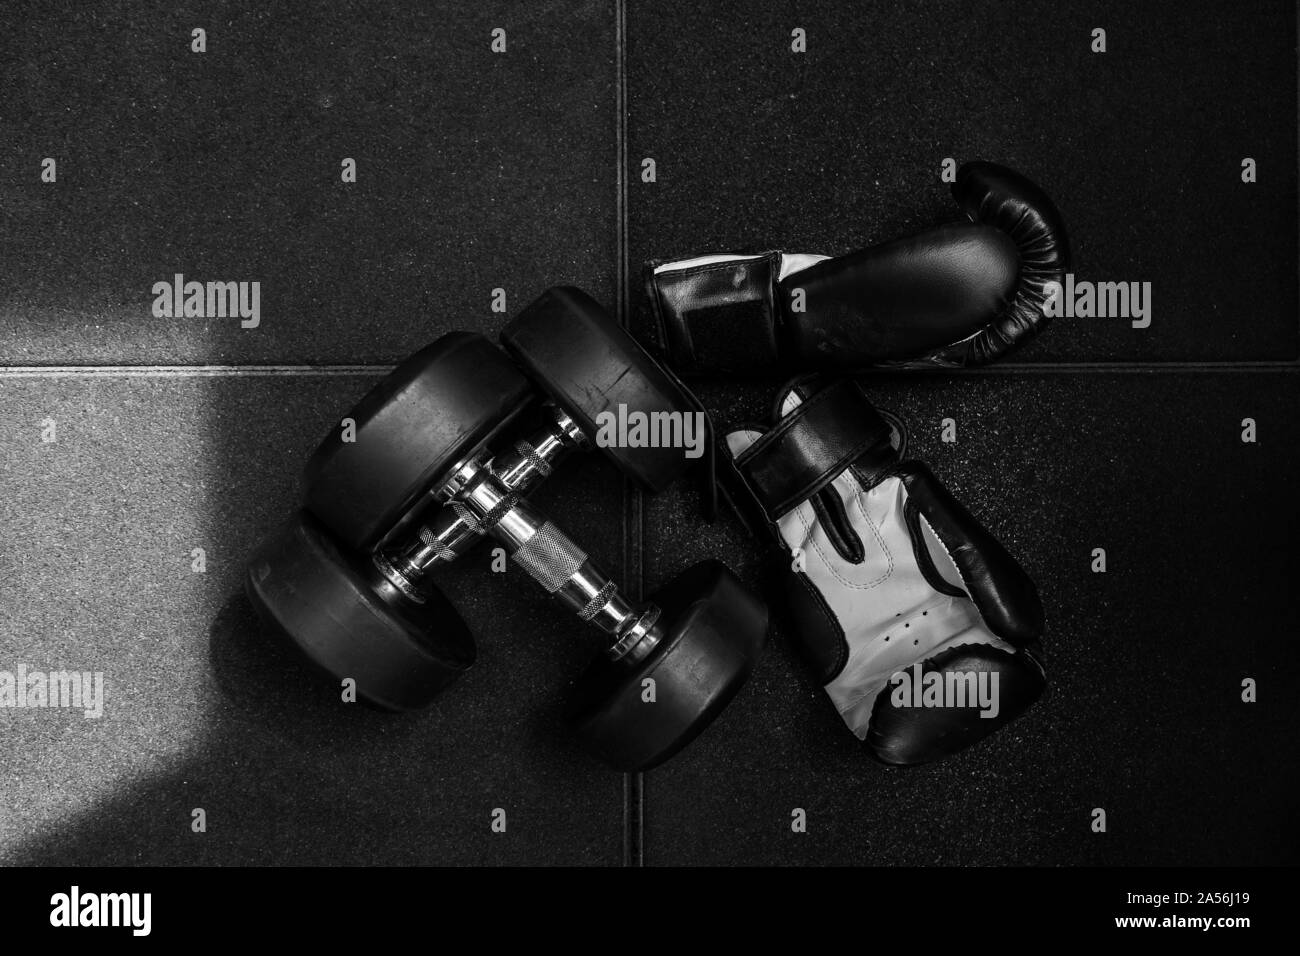 Dos pesas para fitness y guantes de boxeo en blanco y negro en el piso de caucho. Foto de stock